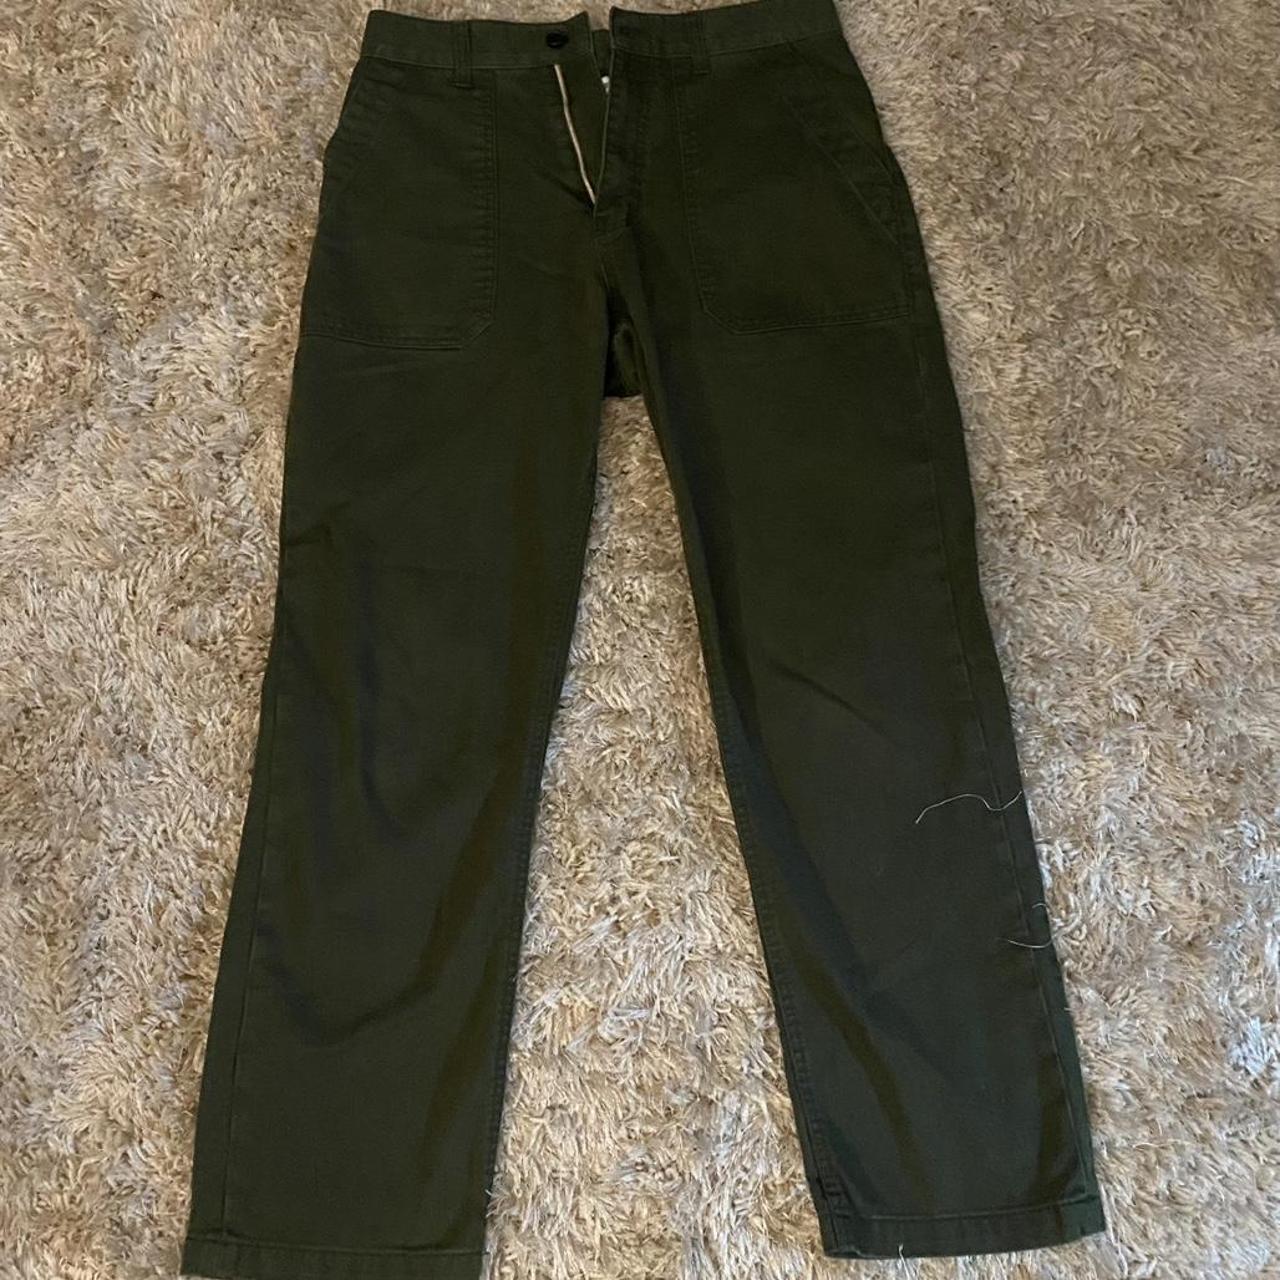 Uniform bridge olive green 107 fatigue pants. Size... - Depop